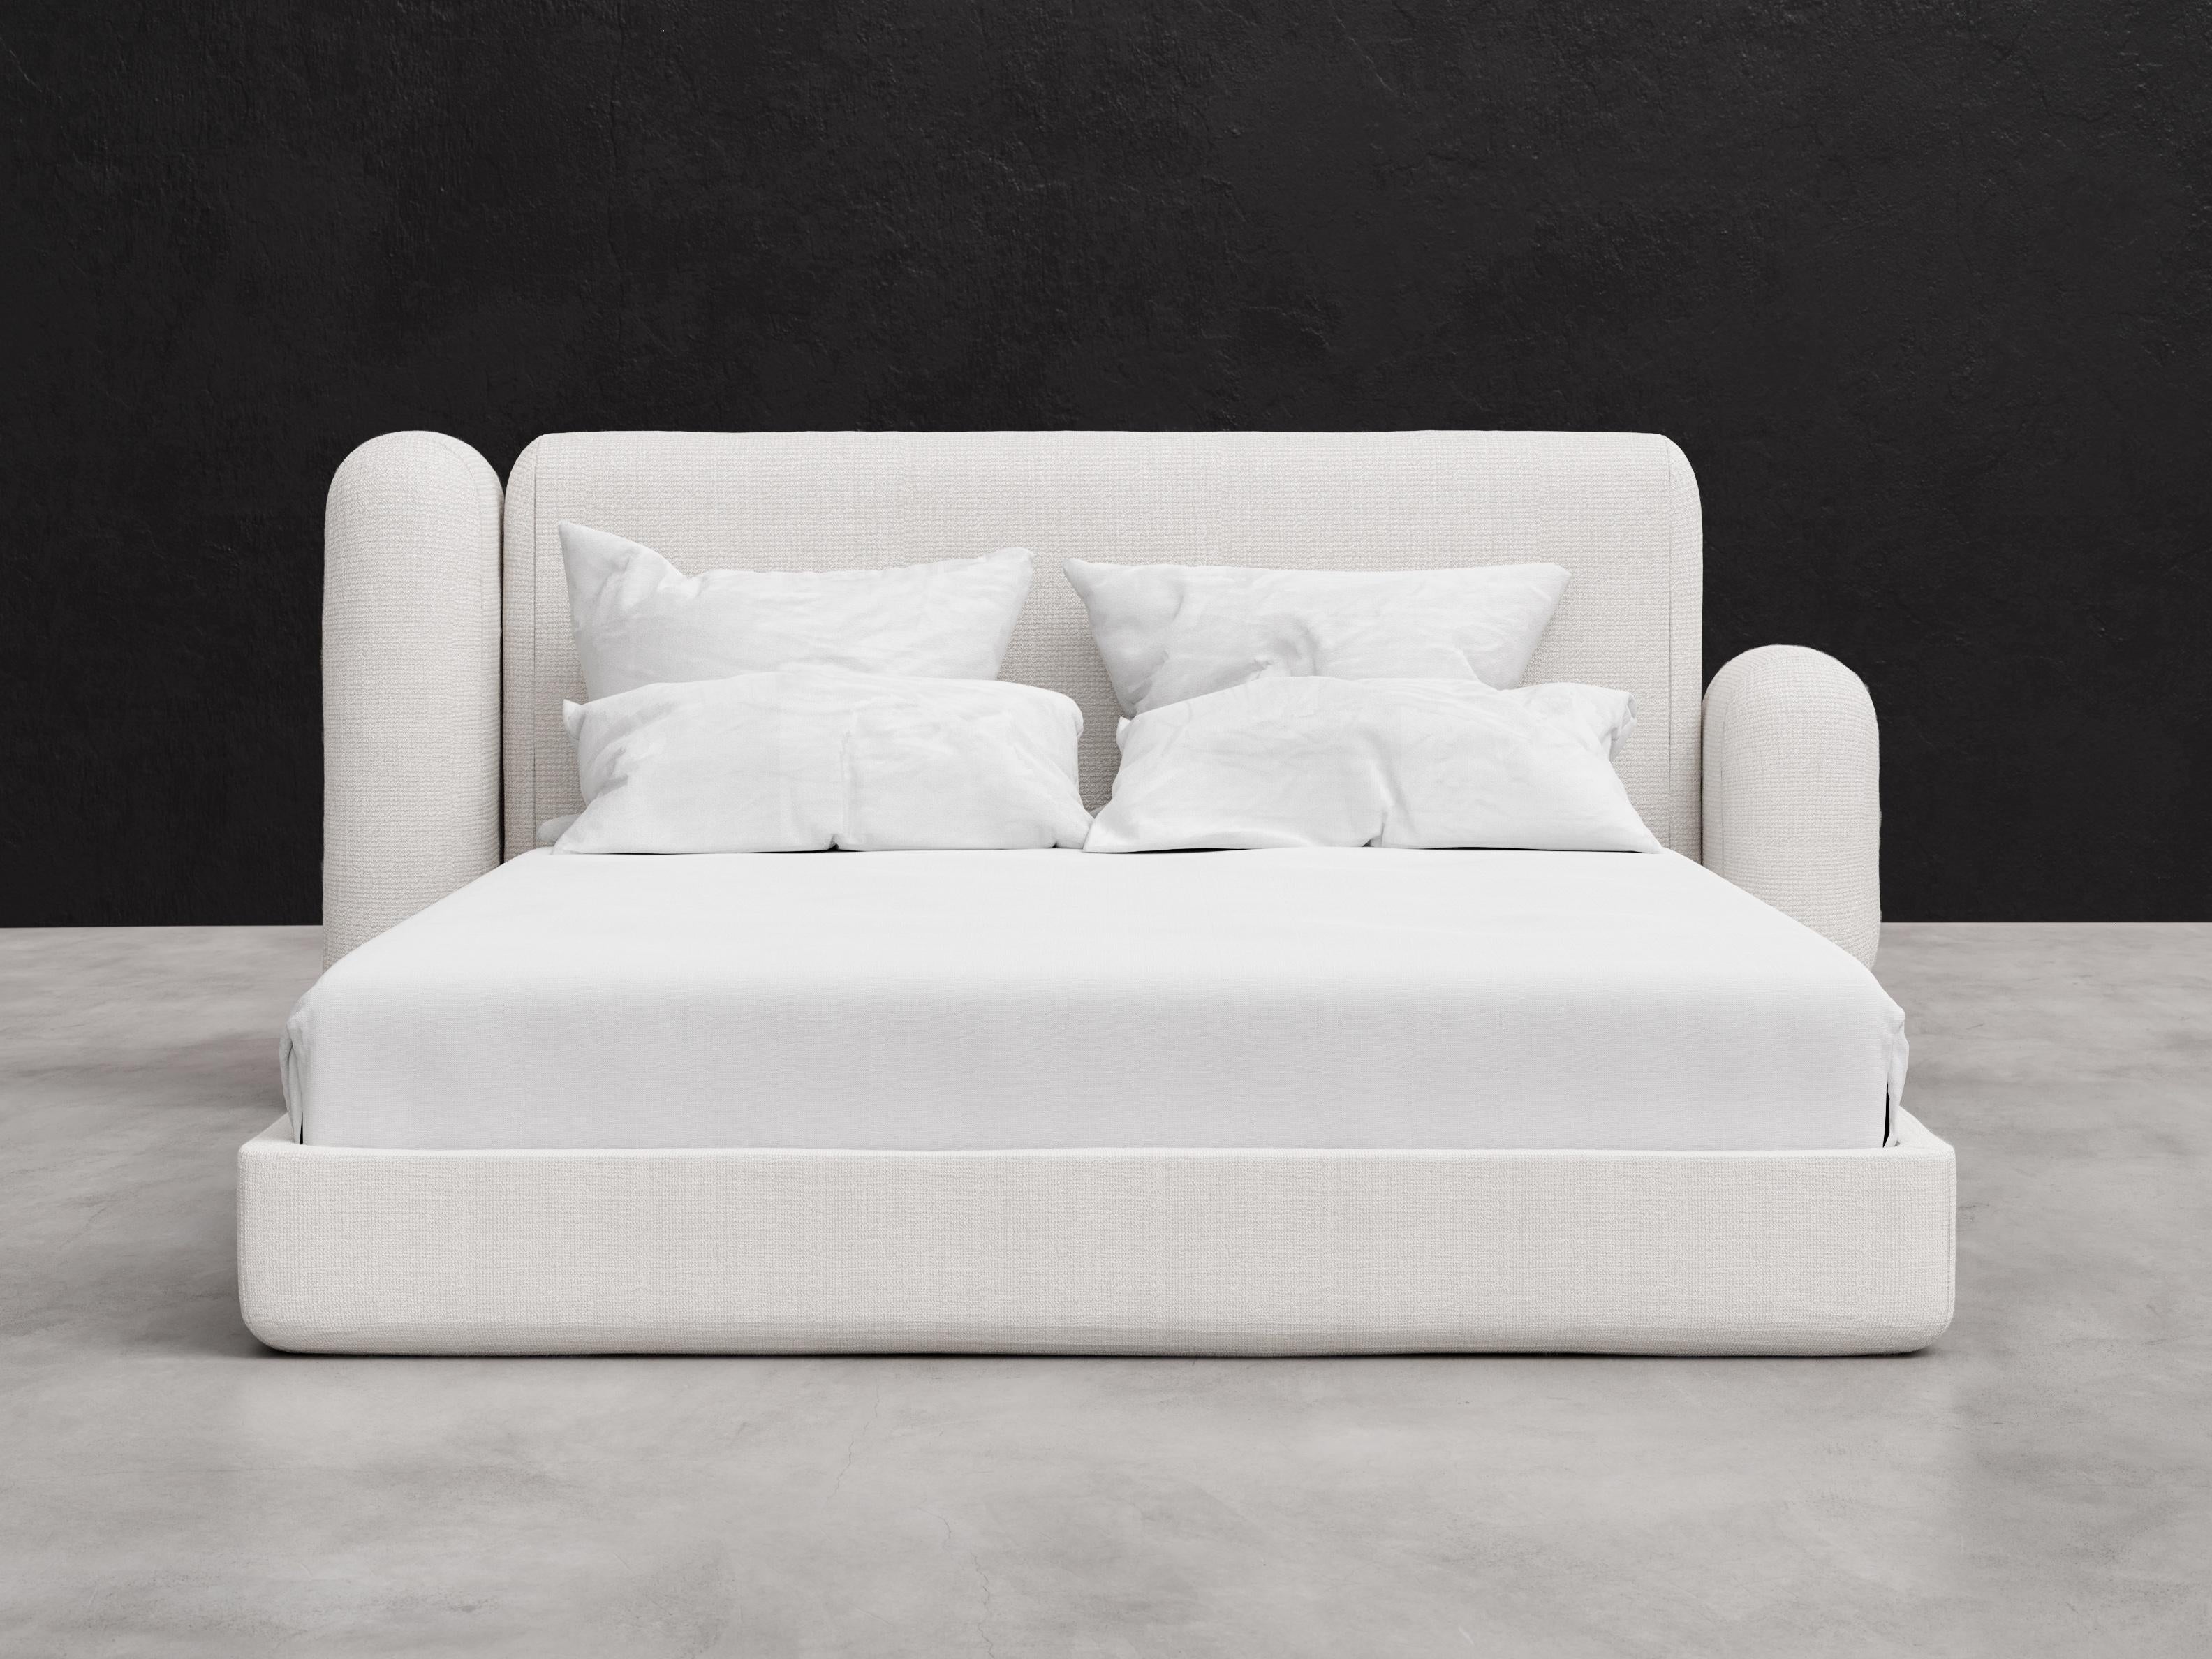 ASYM BED - Lit moderne asymétrique en bouclette d'agneau bouclé en blanc tendre

Voici le lit Asym en taille Queen, un meuble étonnant conçu pour ajouter élégance et sophistication à votre chambre. Avec ses éléments de design asymétriques, ce lit